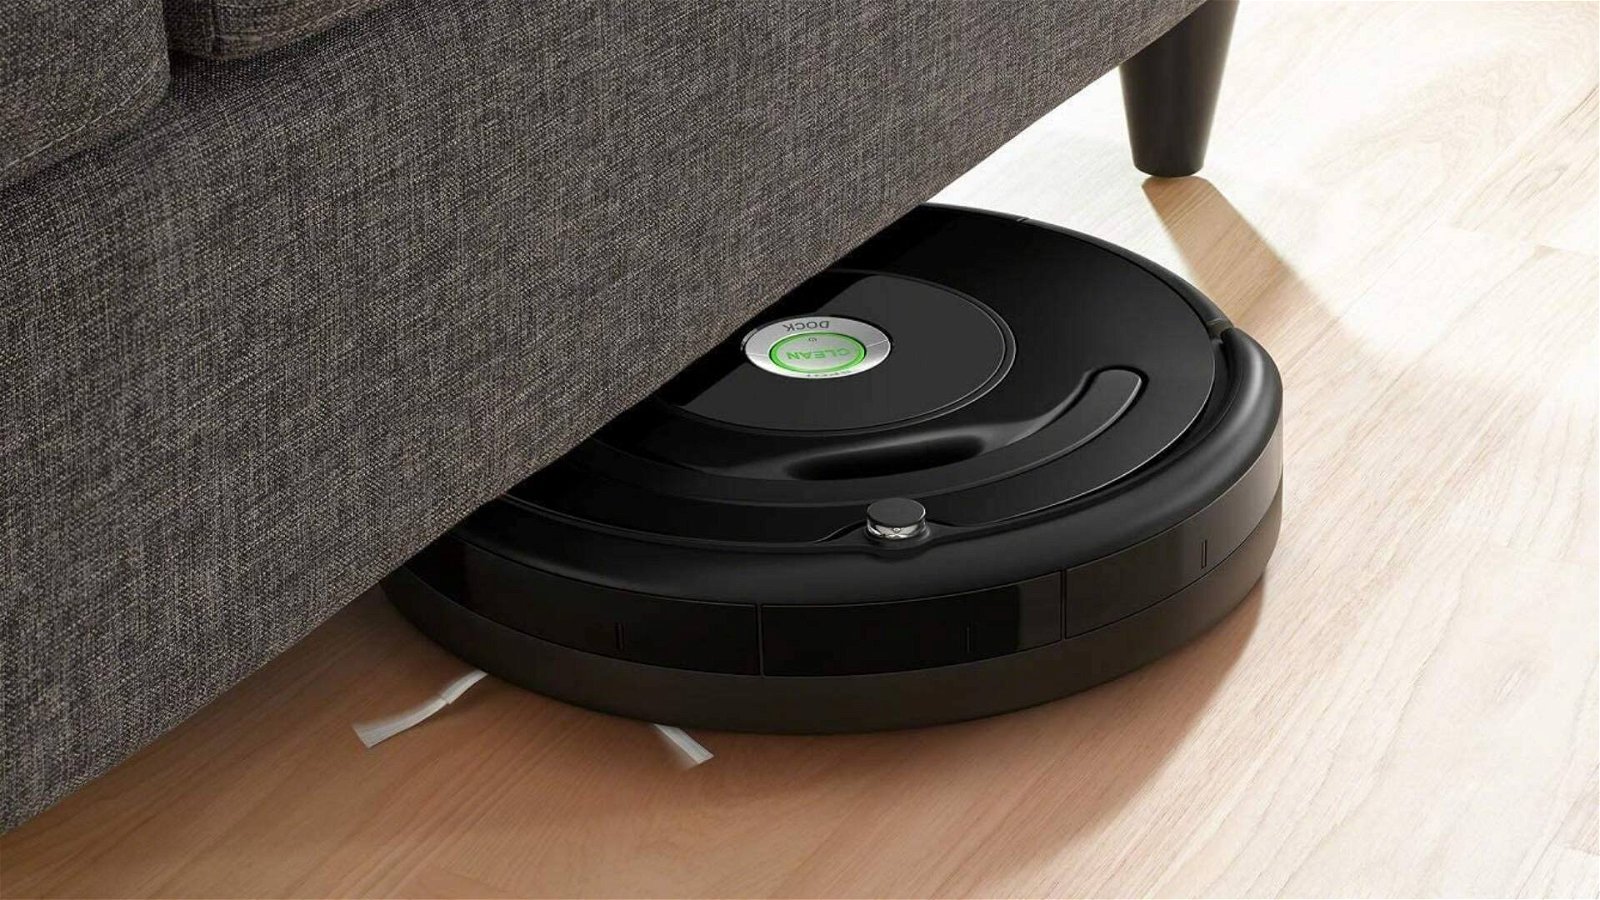 Immagine di Offerte del giorno Amazon: oltre 100€ di sconto sull'aspirapolvere robot Roomba 671!